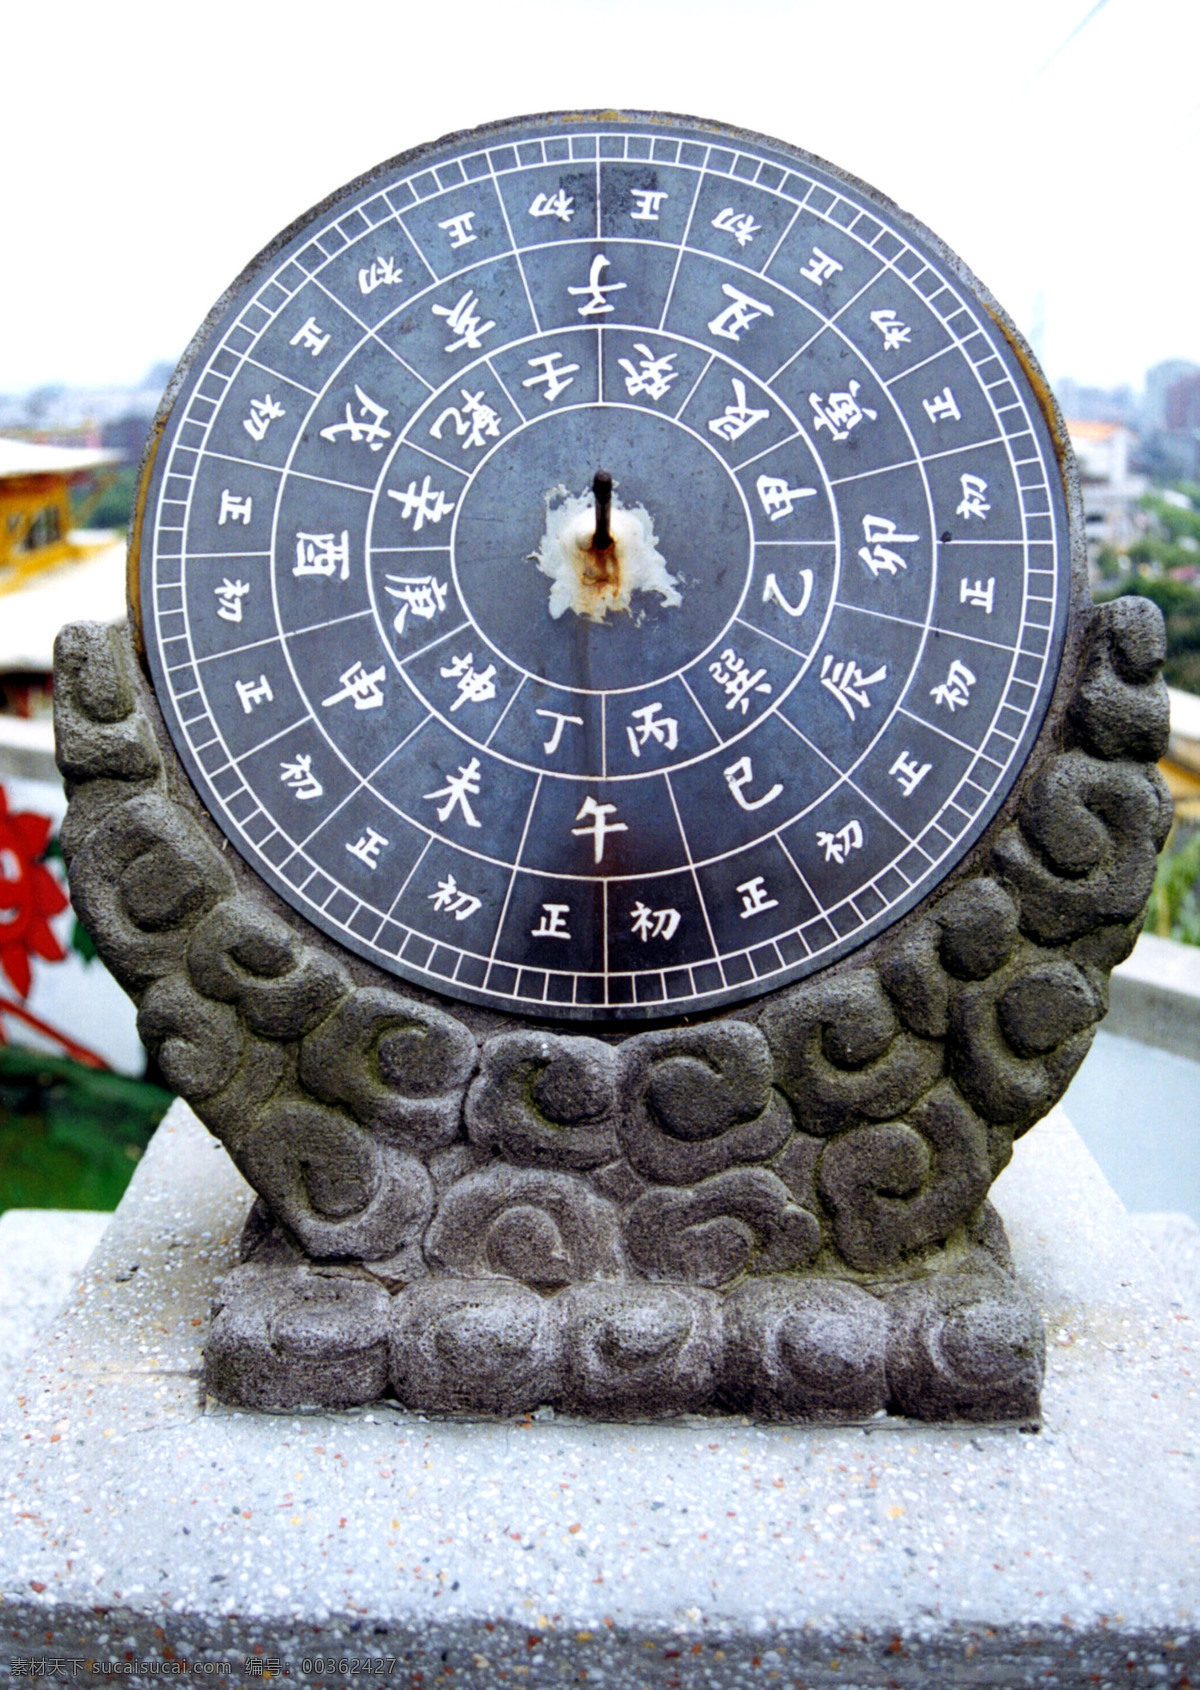 古代 计时器 高清 定位 传统 科技 高清图片 传统文化 文化艺术